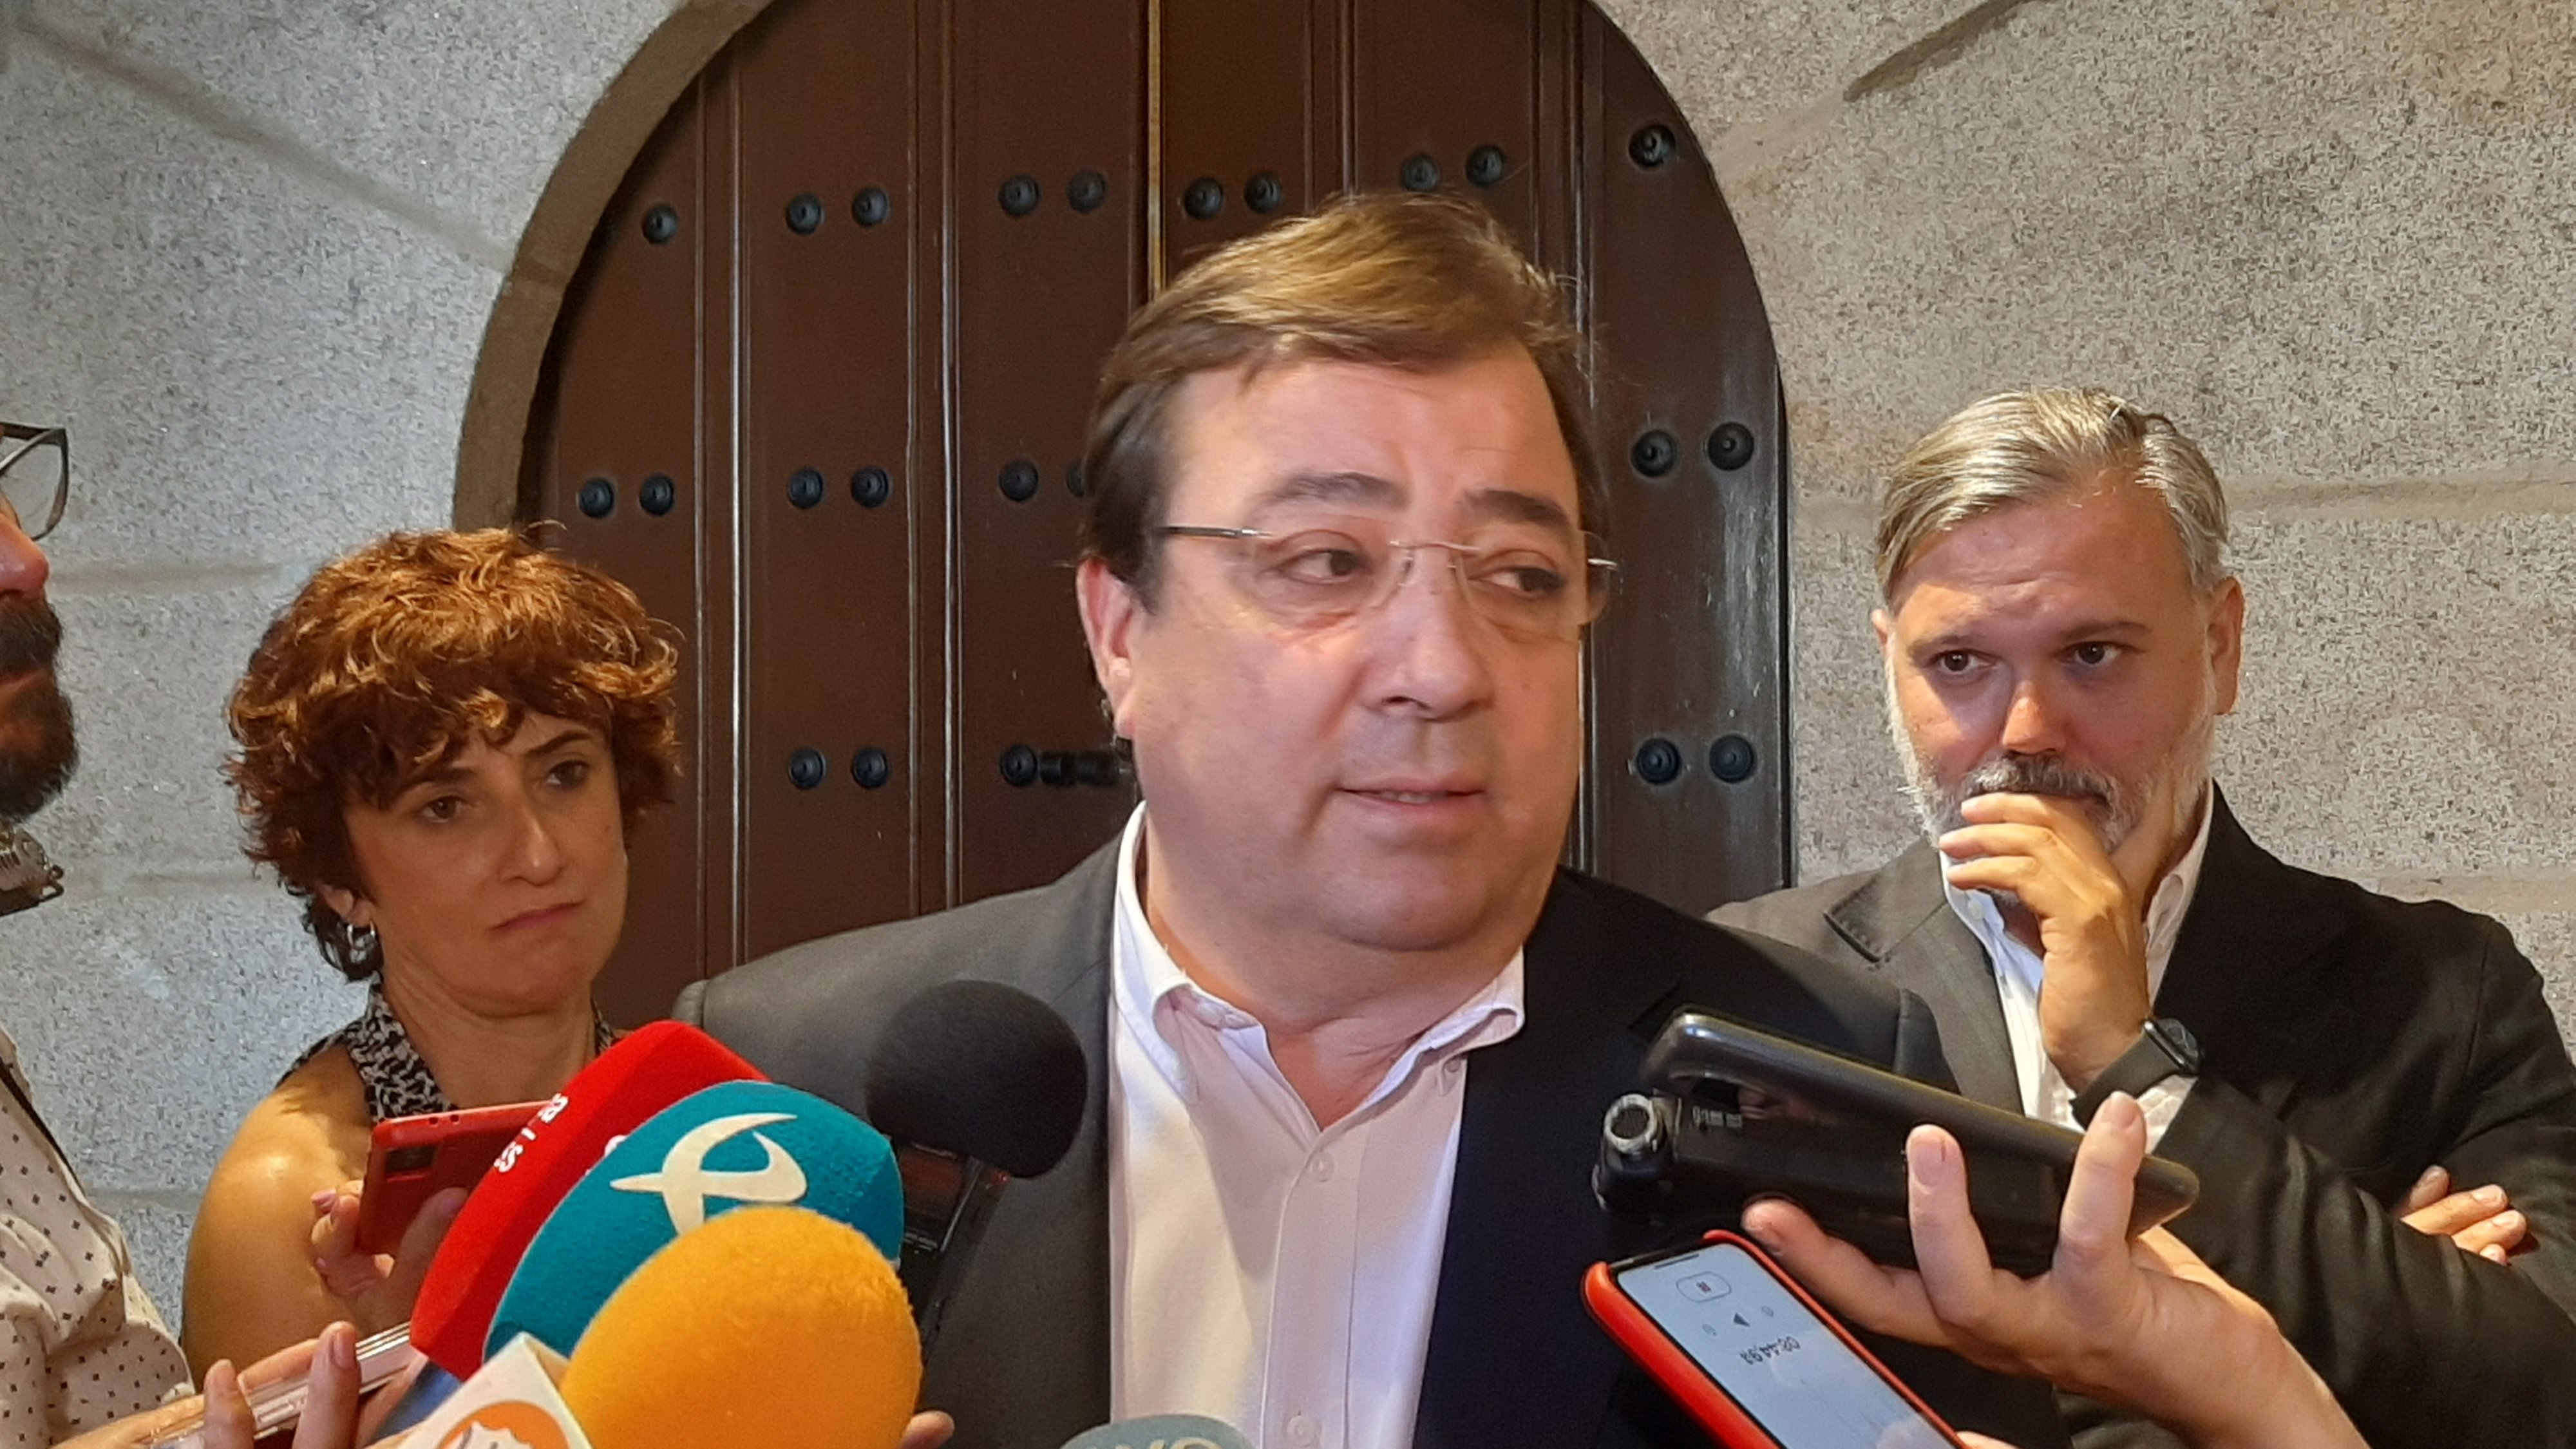 Fernández Vara (PSOE) deixa la política i no liderarà l'oposició a Guardiola a Extremadura